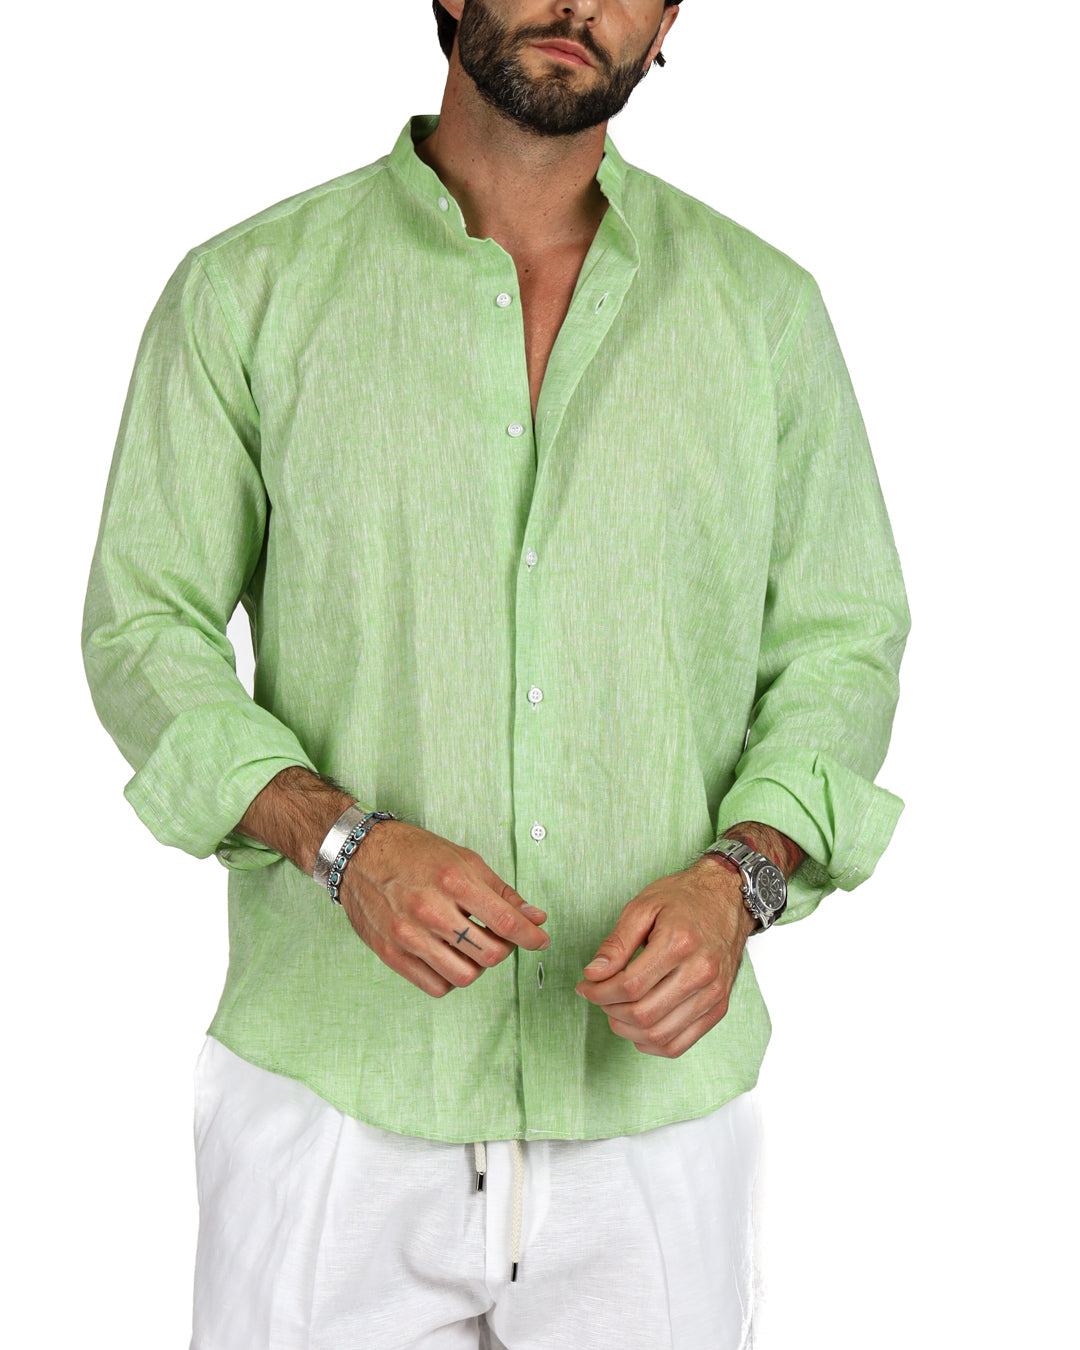 Positano - Apple green linen Korean shirt